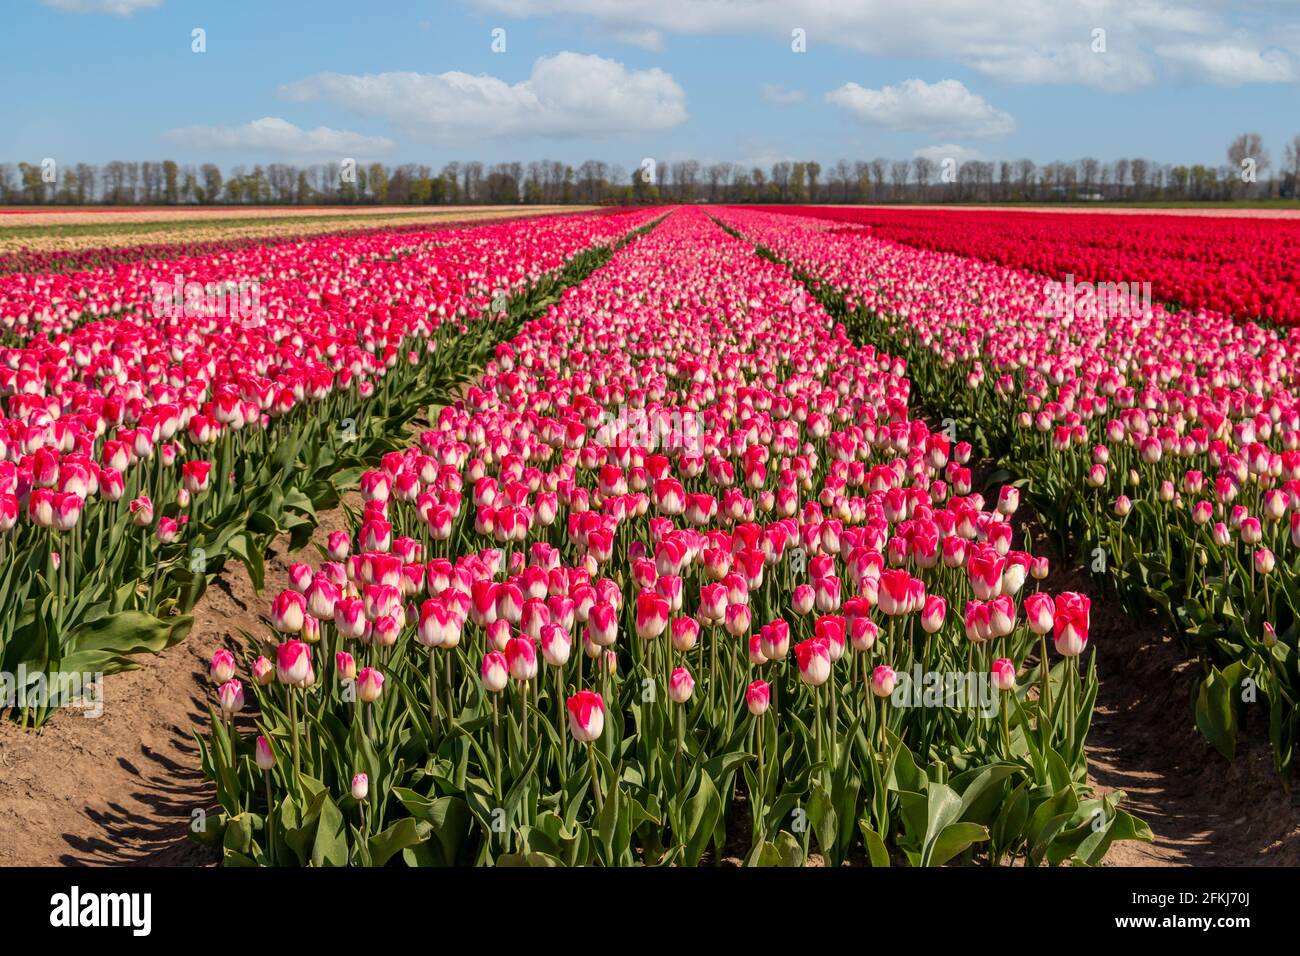 Tulpenfeld im Frühjahr, weltweit bekannt für die schönen Farben auf dem Land, Provinz Flevoland, Niederlande Stockfoto